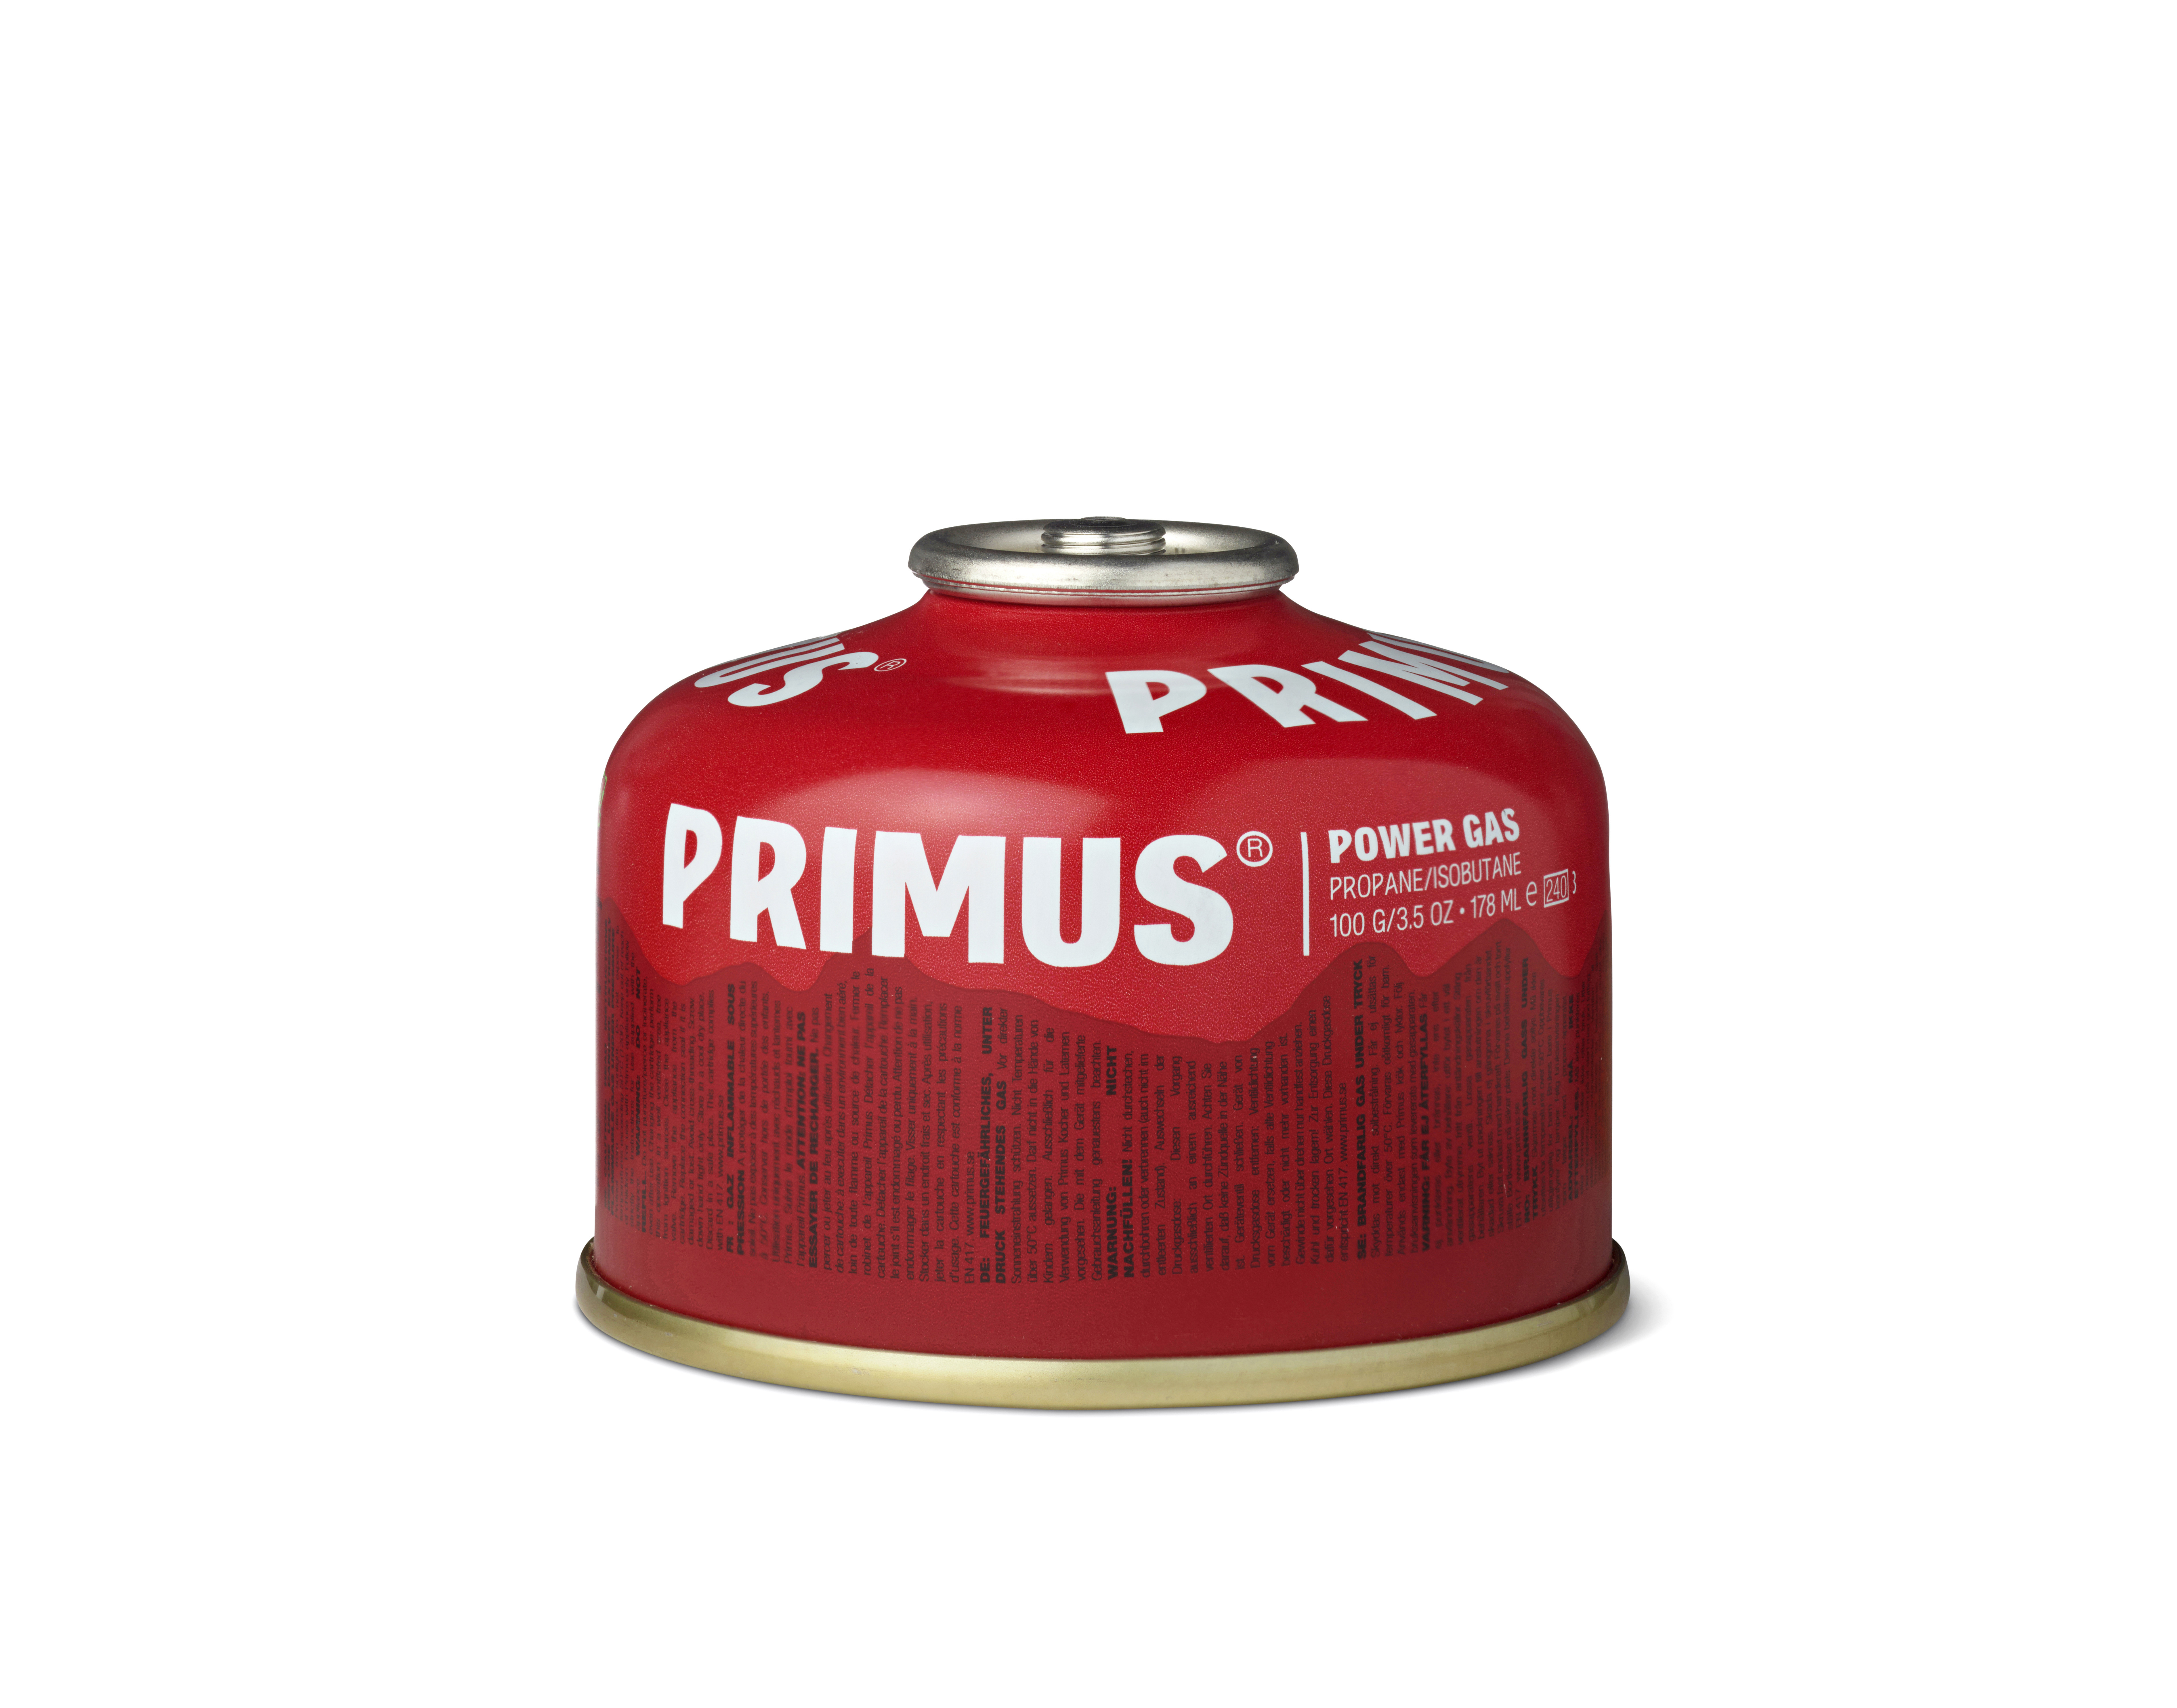 Primus 'Power Gas' Schraubkartusche kalte Jahreszeit